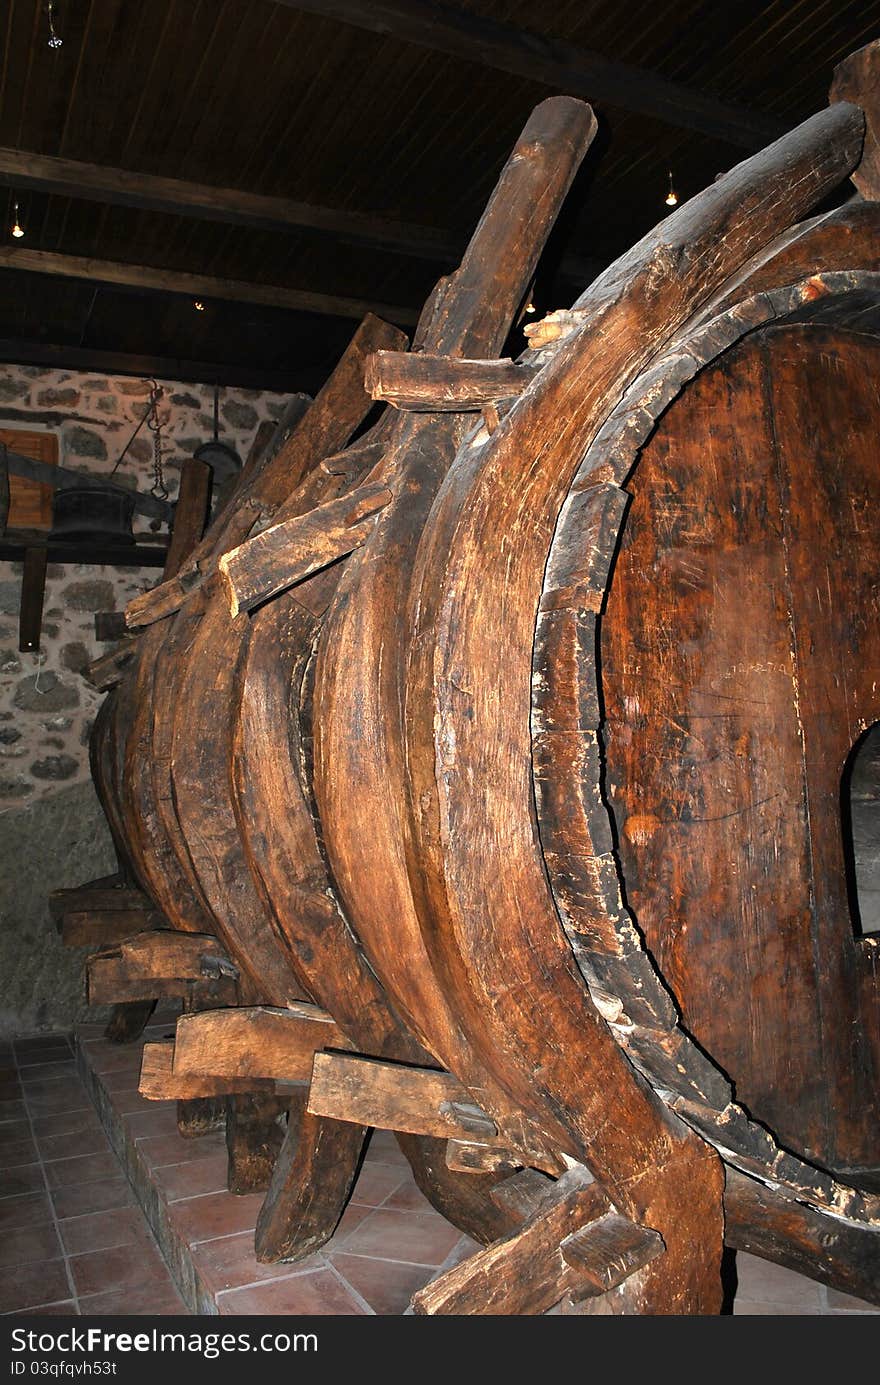 Old wooden barrel of wine in meteora monastery. Old wooden barrel of wine in meteora monastery